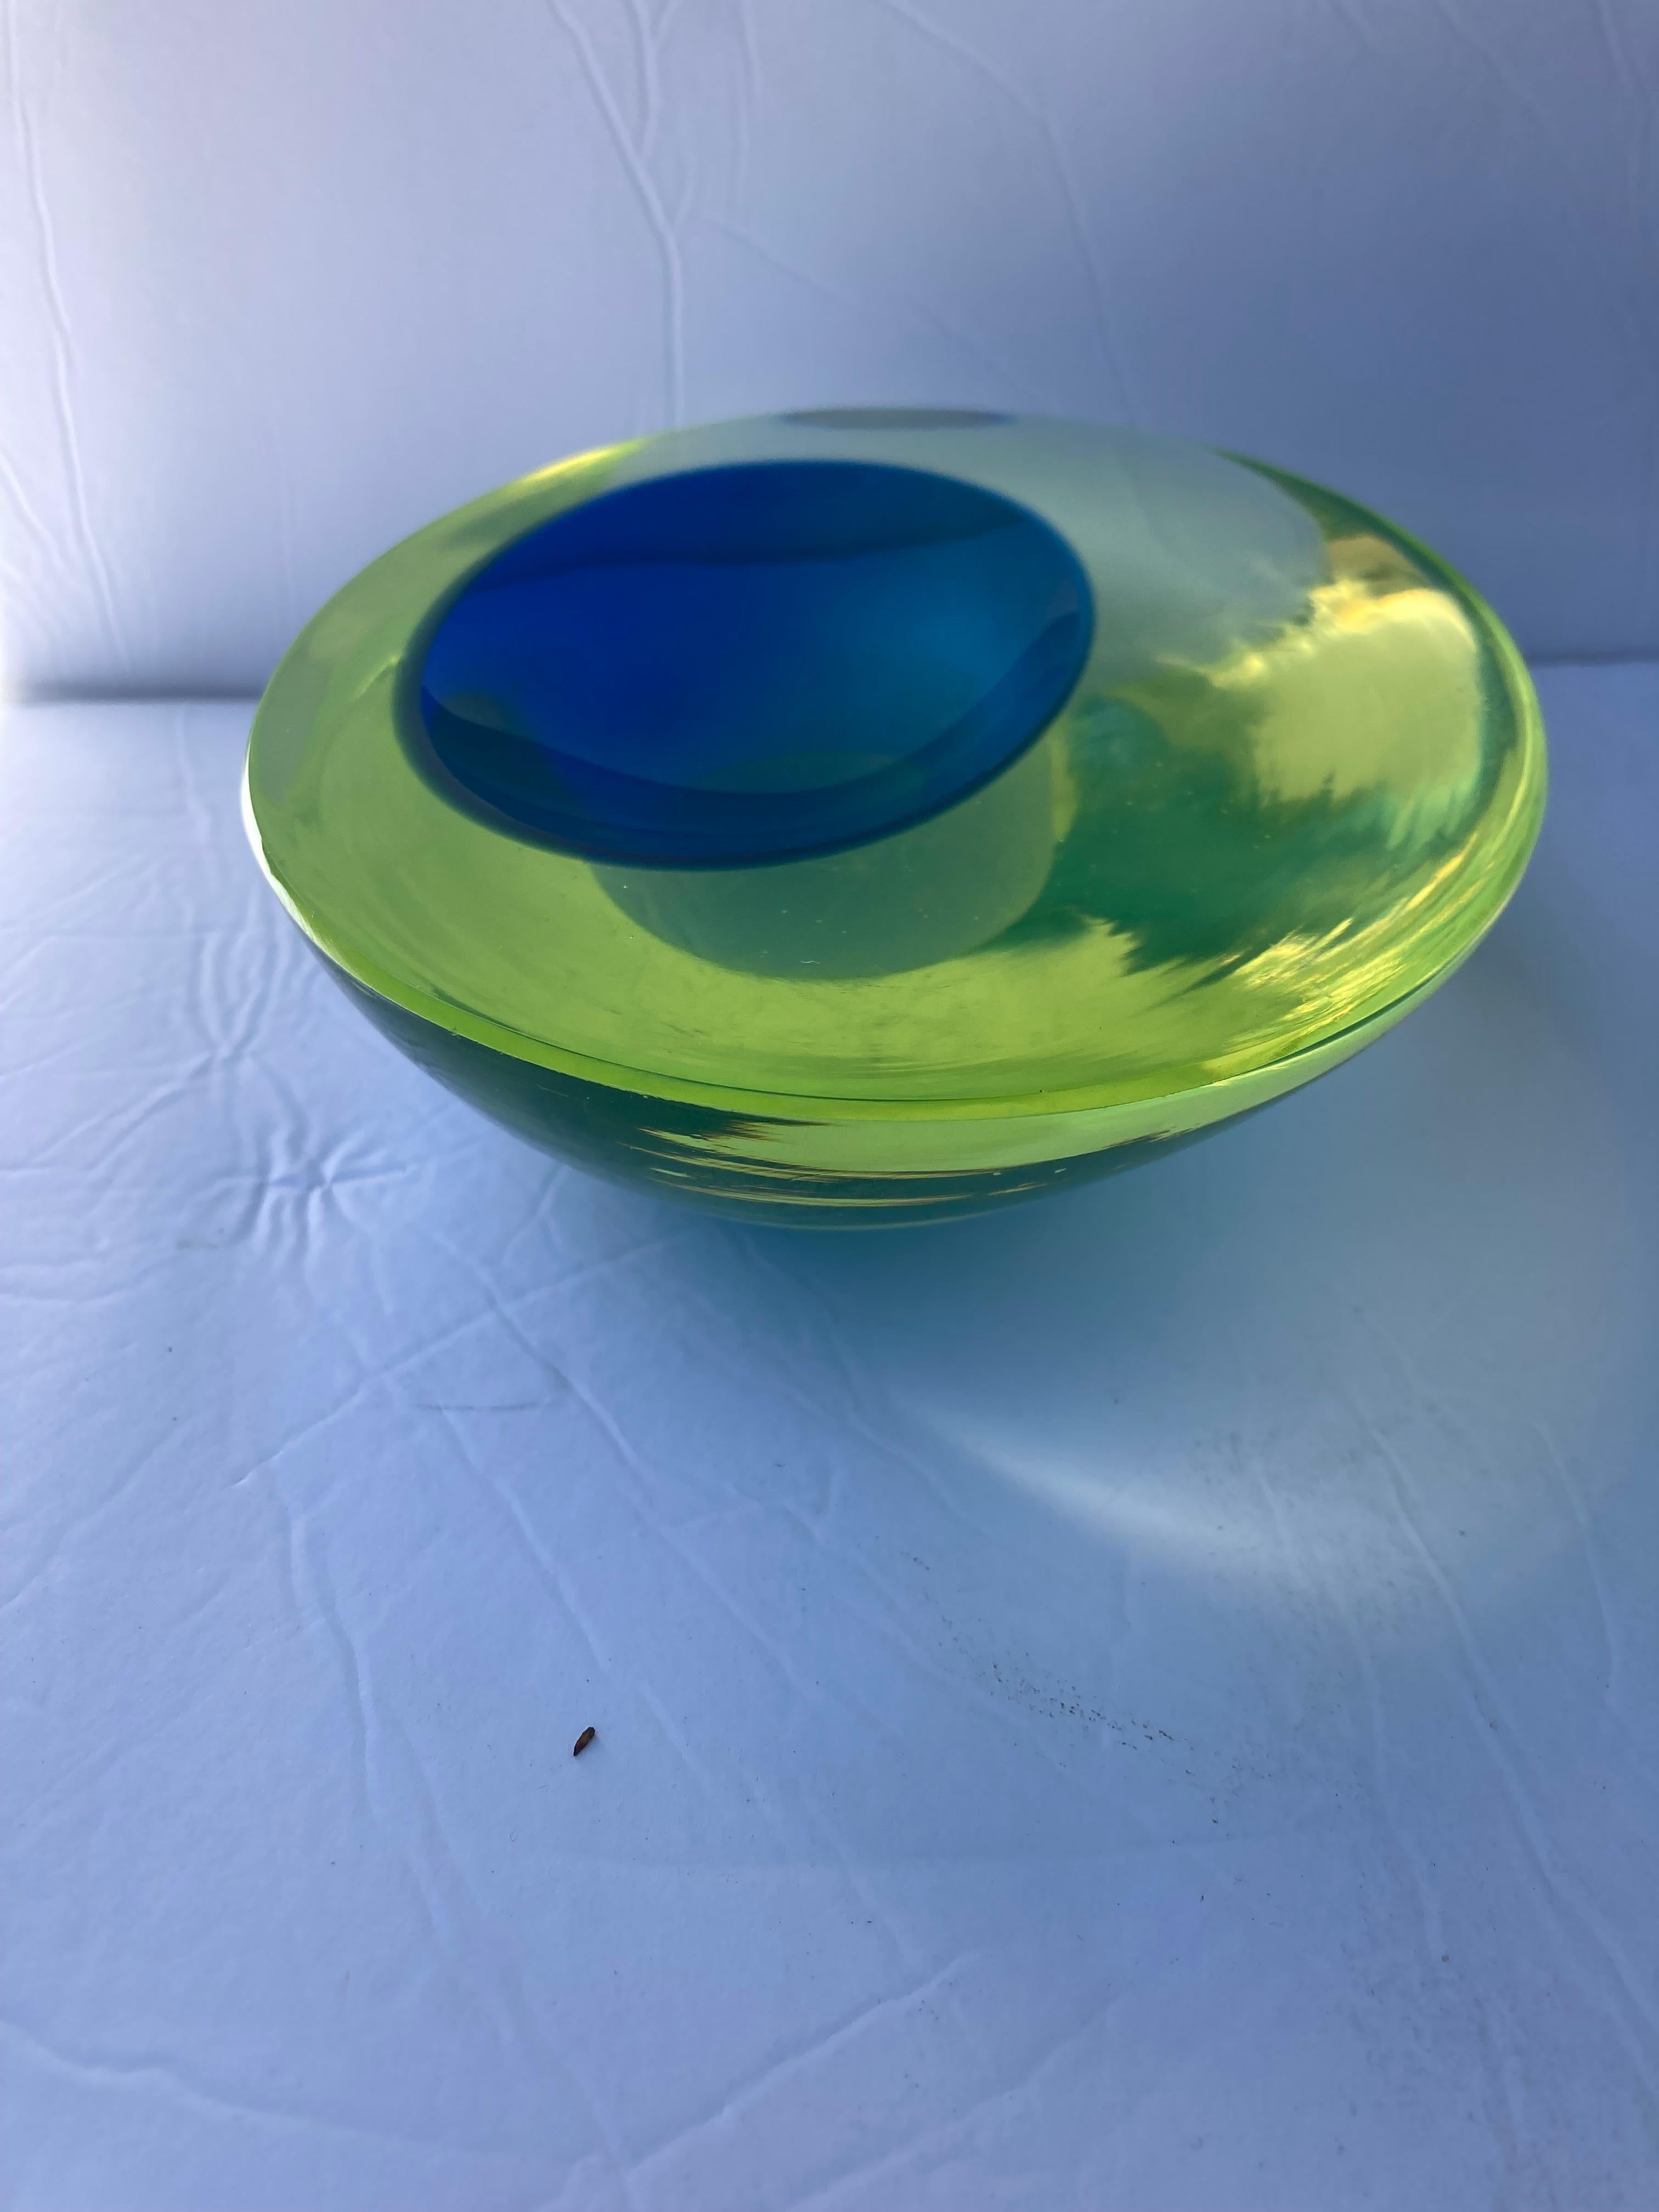 Magnifique coupe en verre de Murano à l'uranium, conçue par Antonio Da Ros.